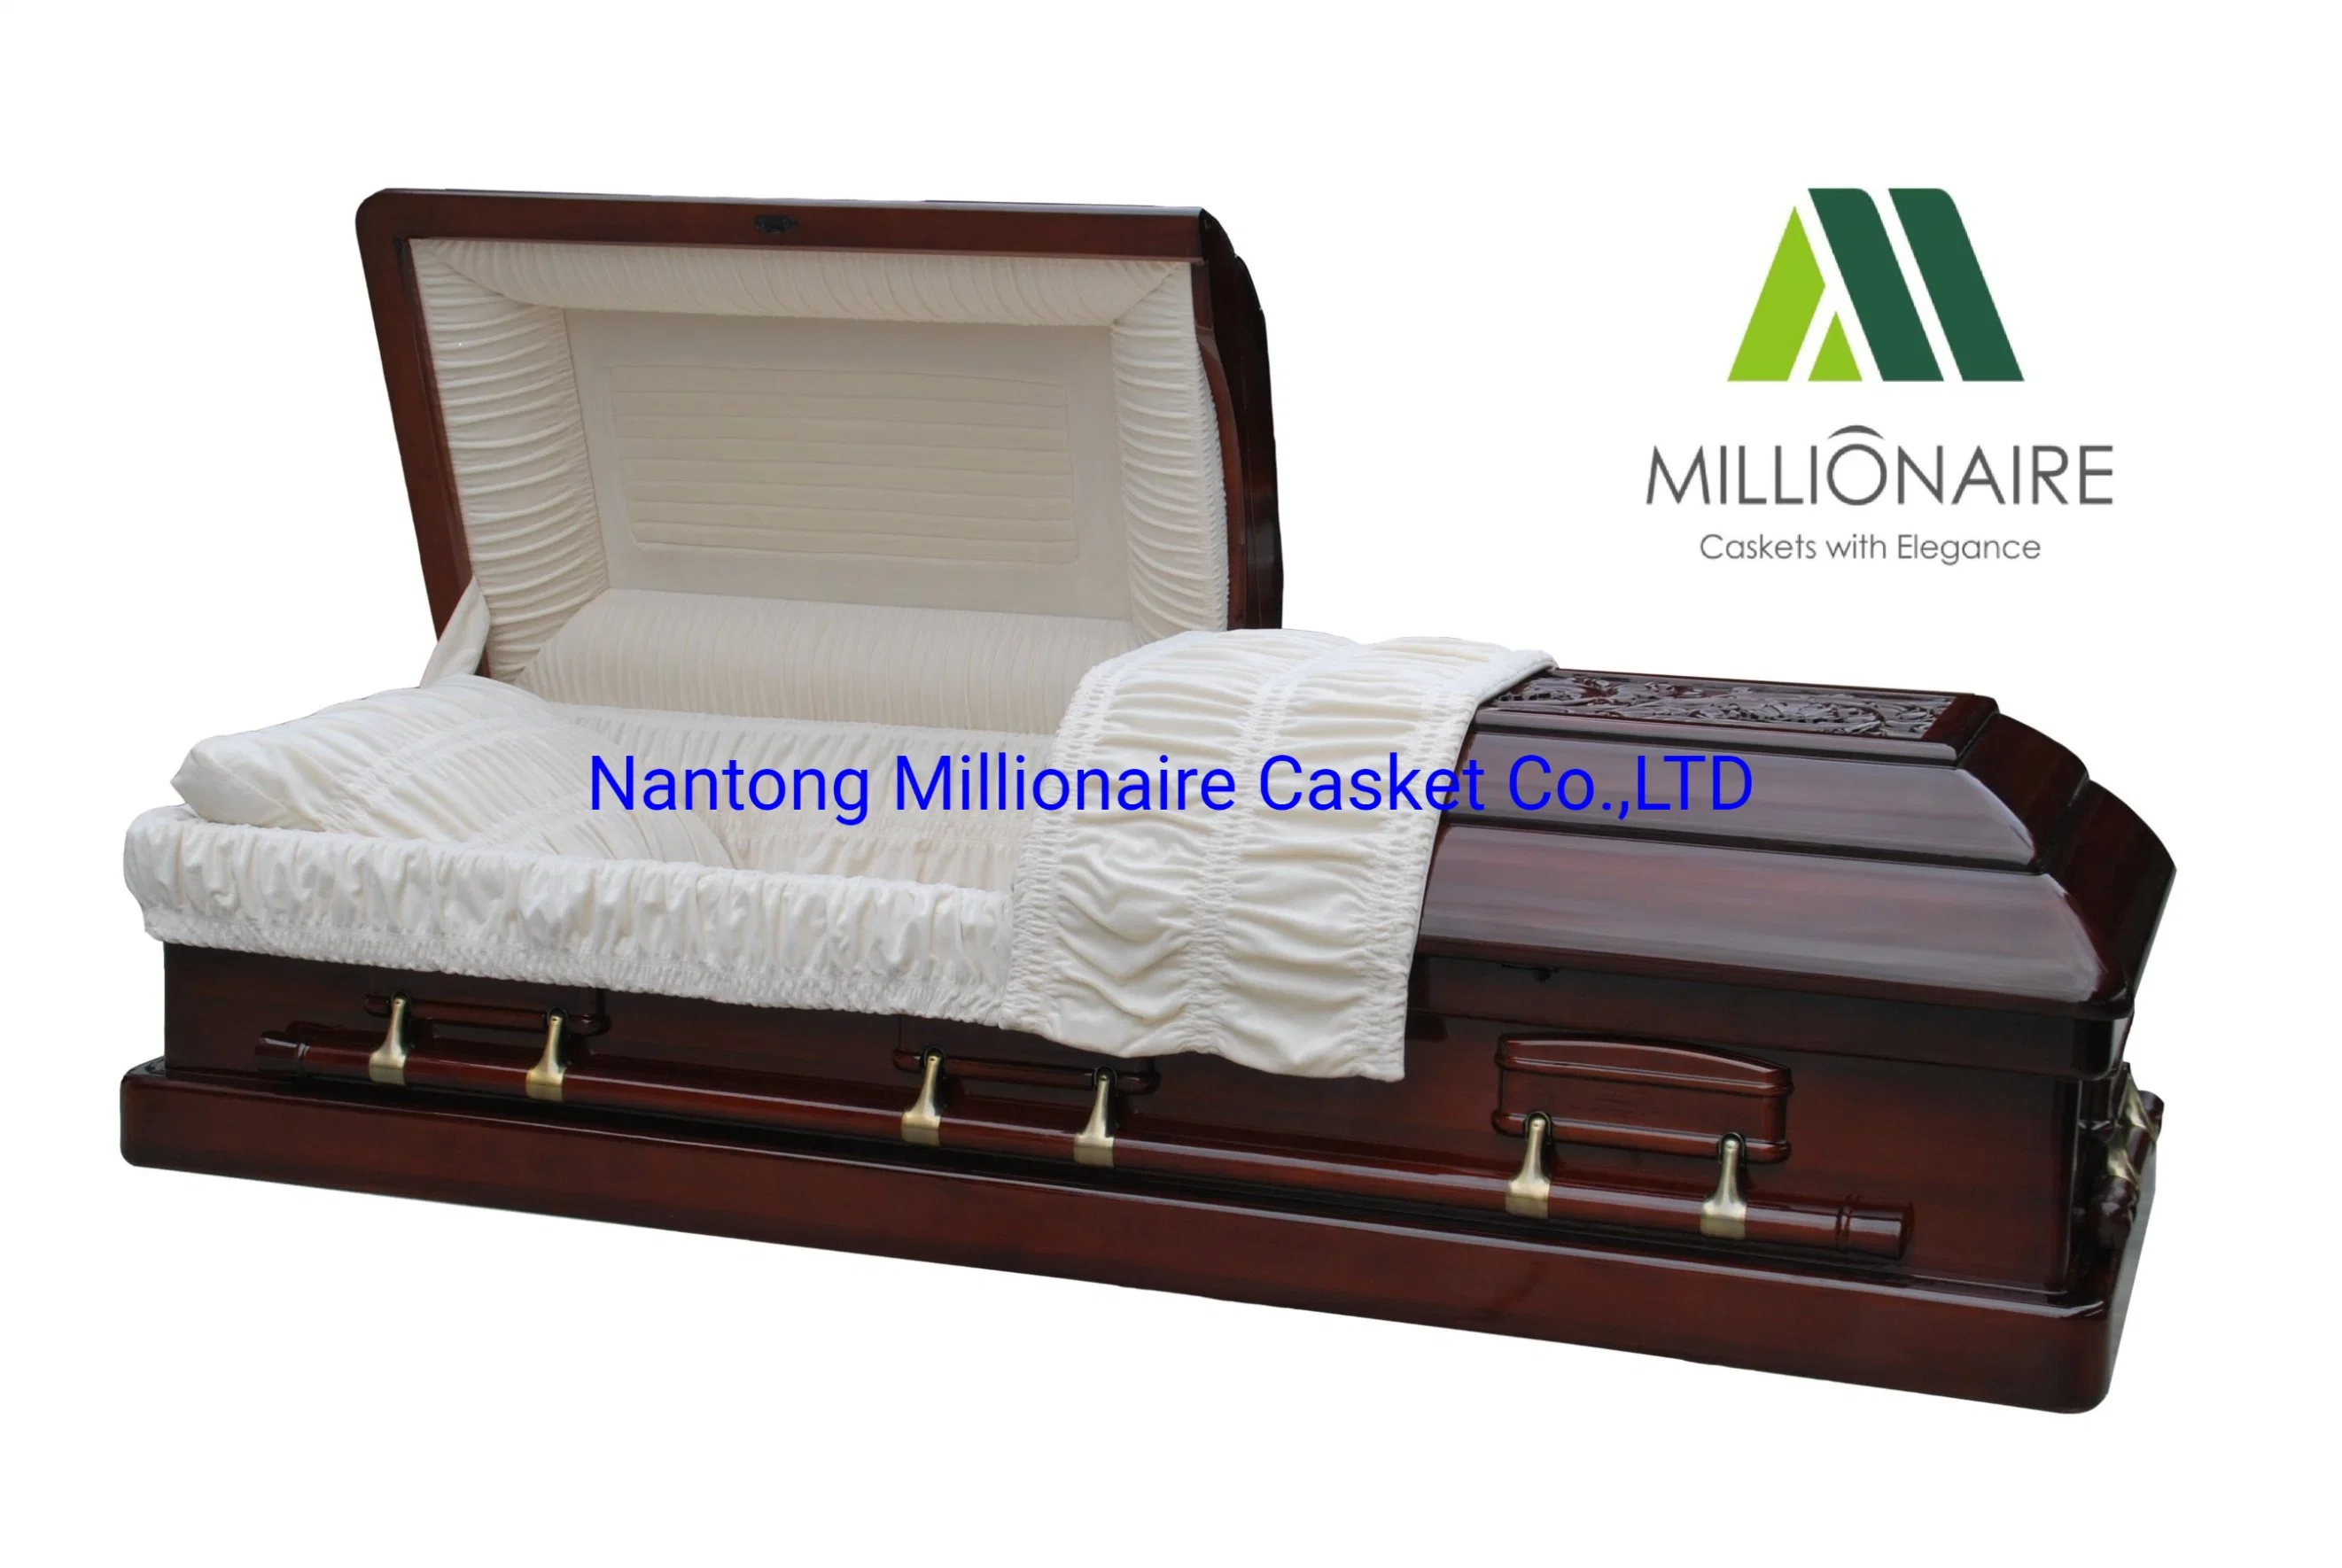 Coffrets en bois de luxe avec gravures sur le cercueil haut et les côtés